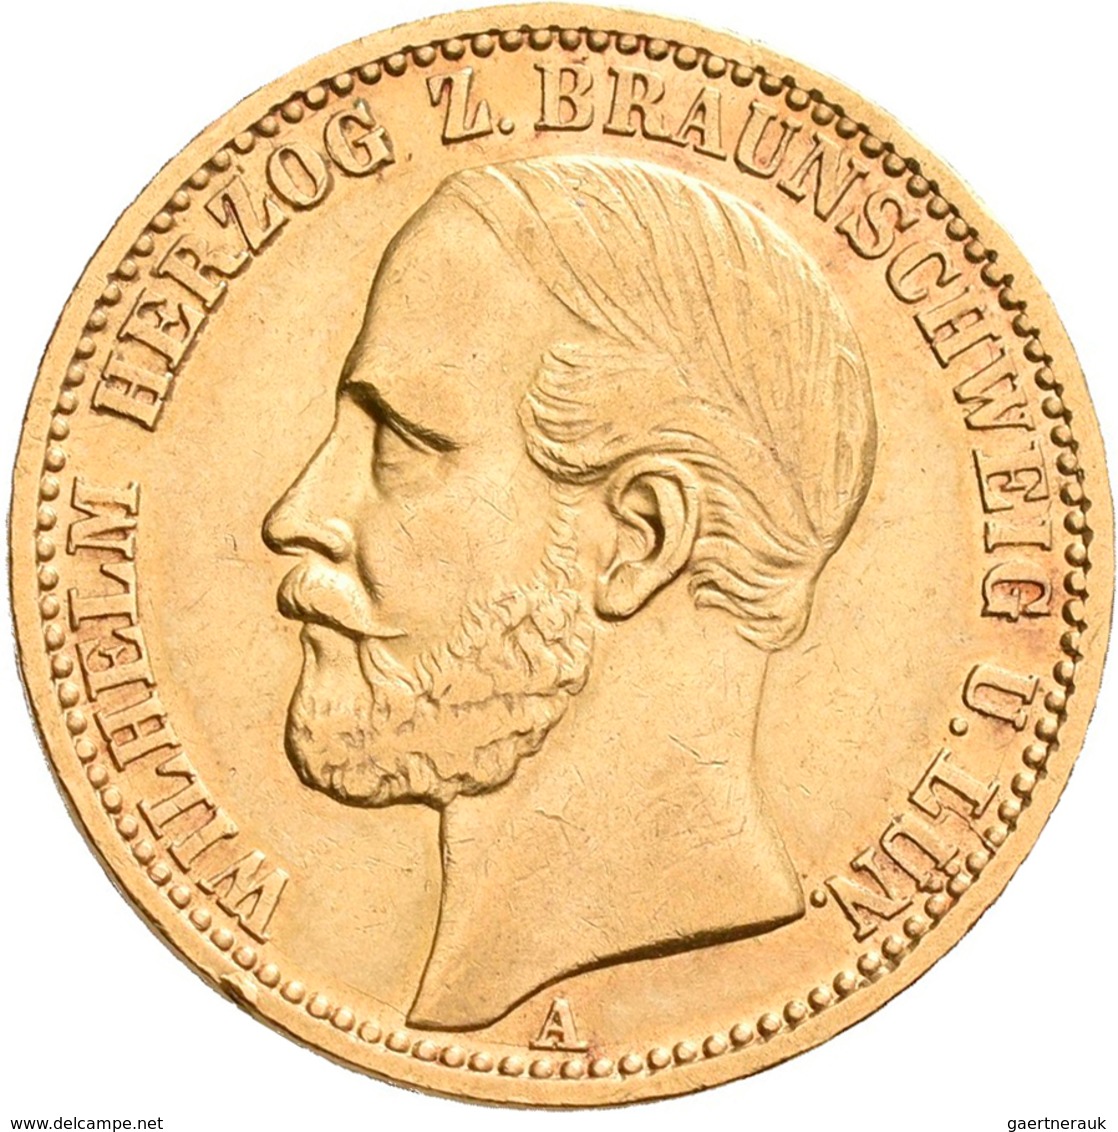 Braunschwein-Lüneburg: Wilhelm 1831-1884: 20 Mark 1875, Jaeger 203. 7,92 G, 900/1000 Gold, Winz. Kra - Goldmünzen